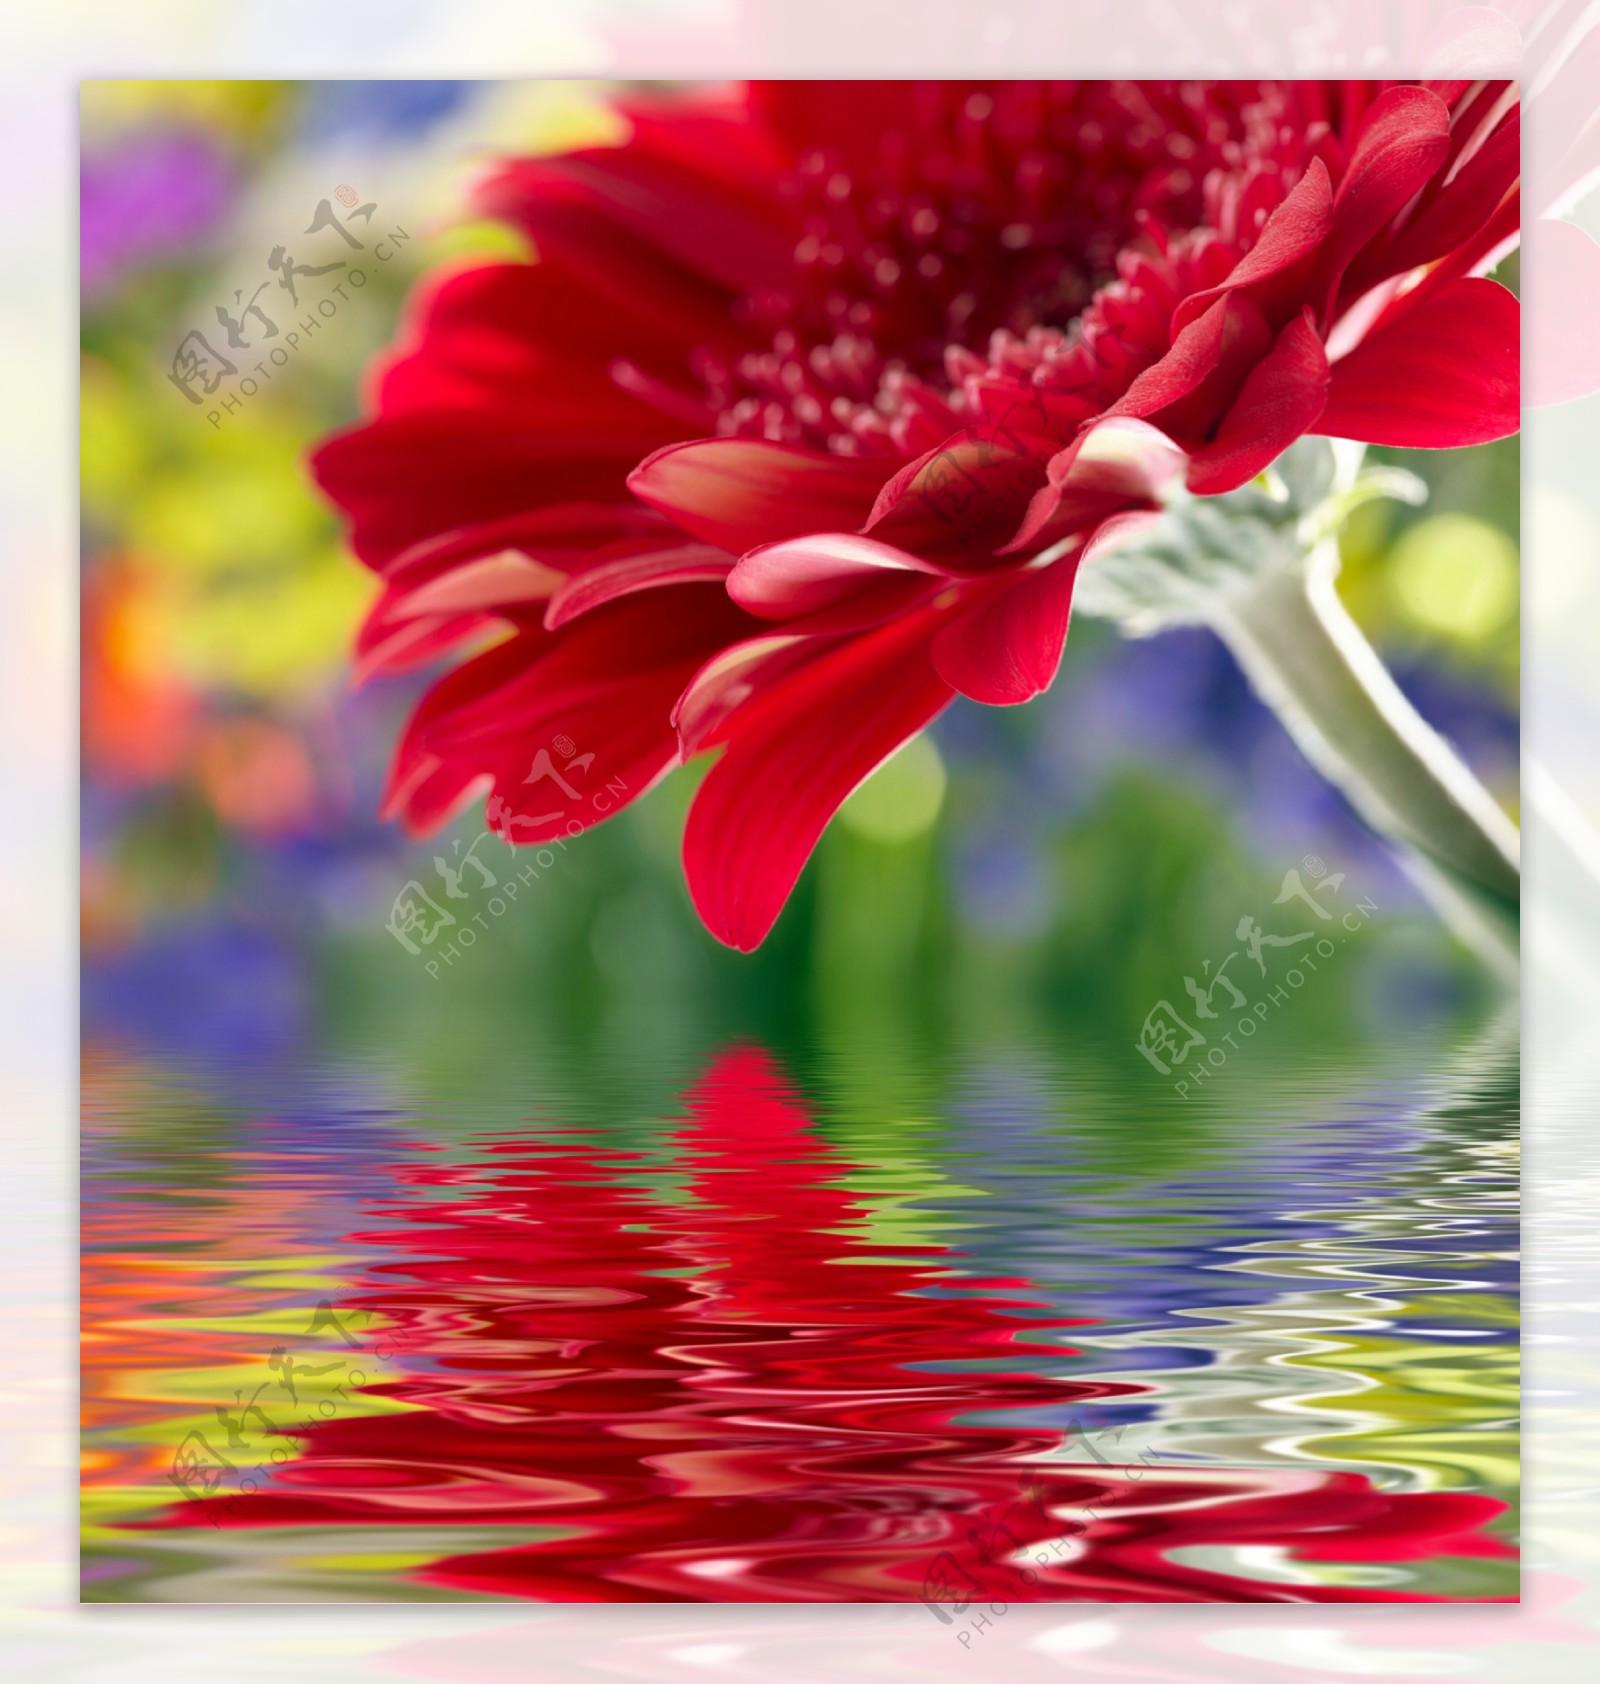 有水倒影的红色花朵图片